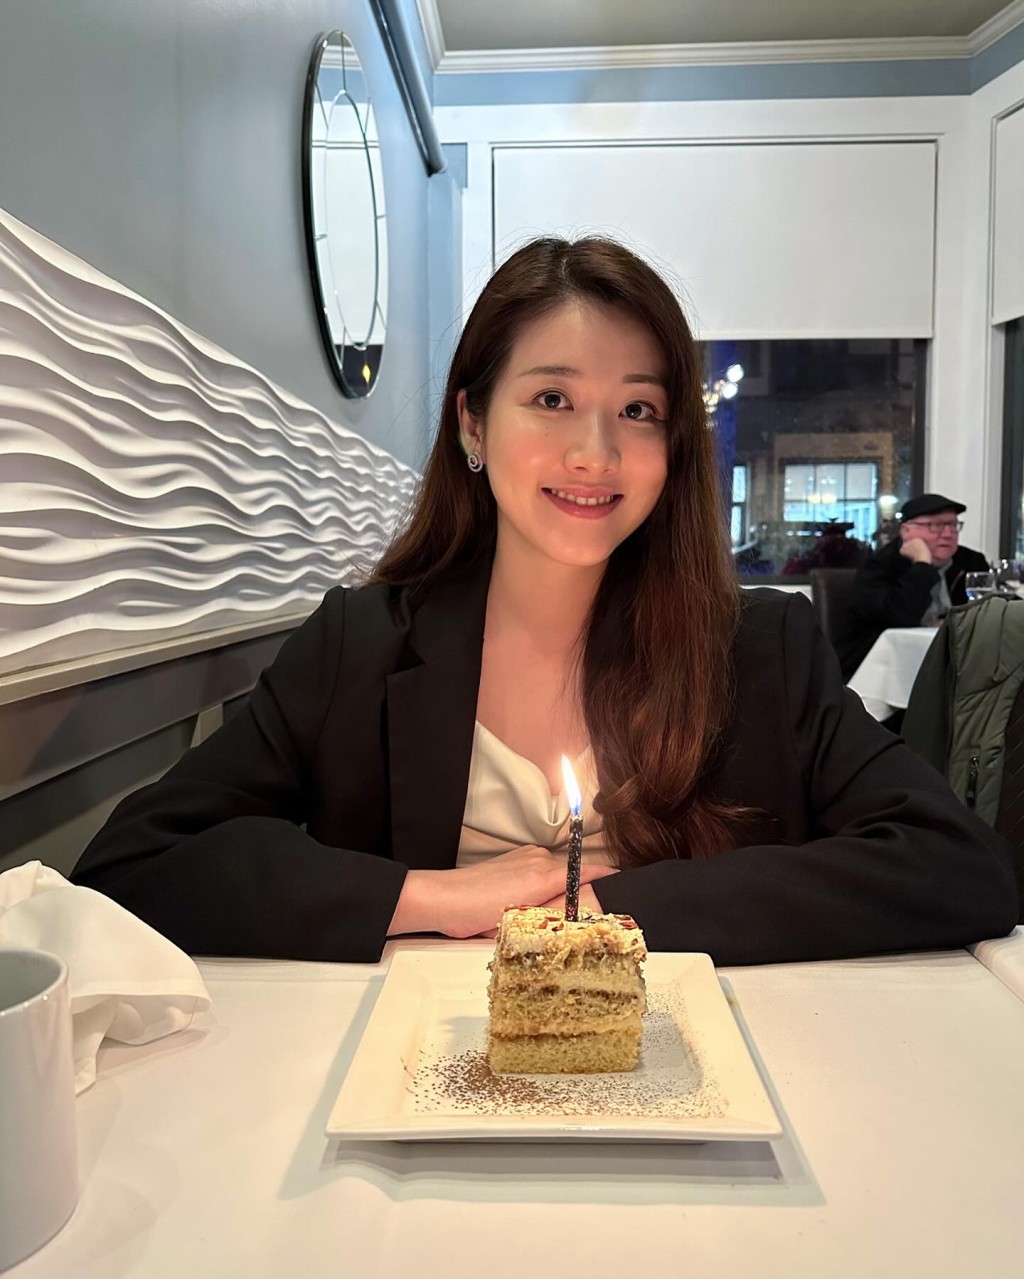 本月31岁生日的邓佩仪不停与朋友切蛋糕庆祝。